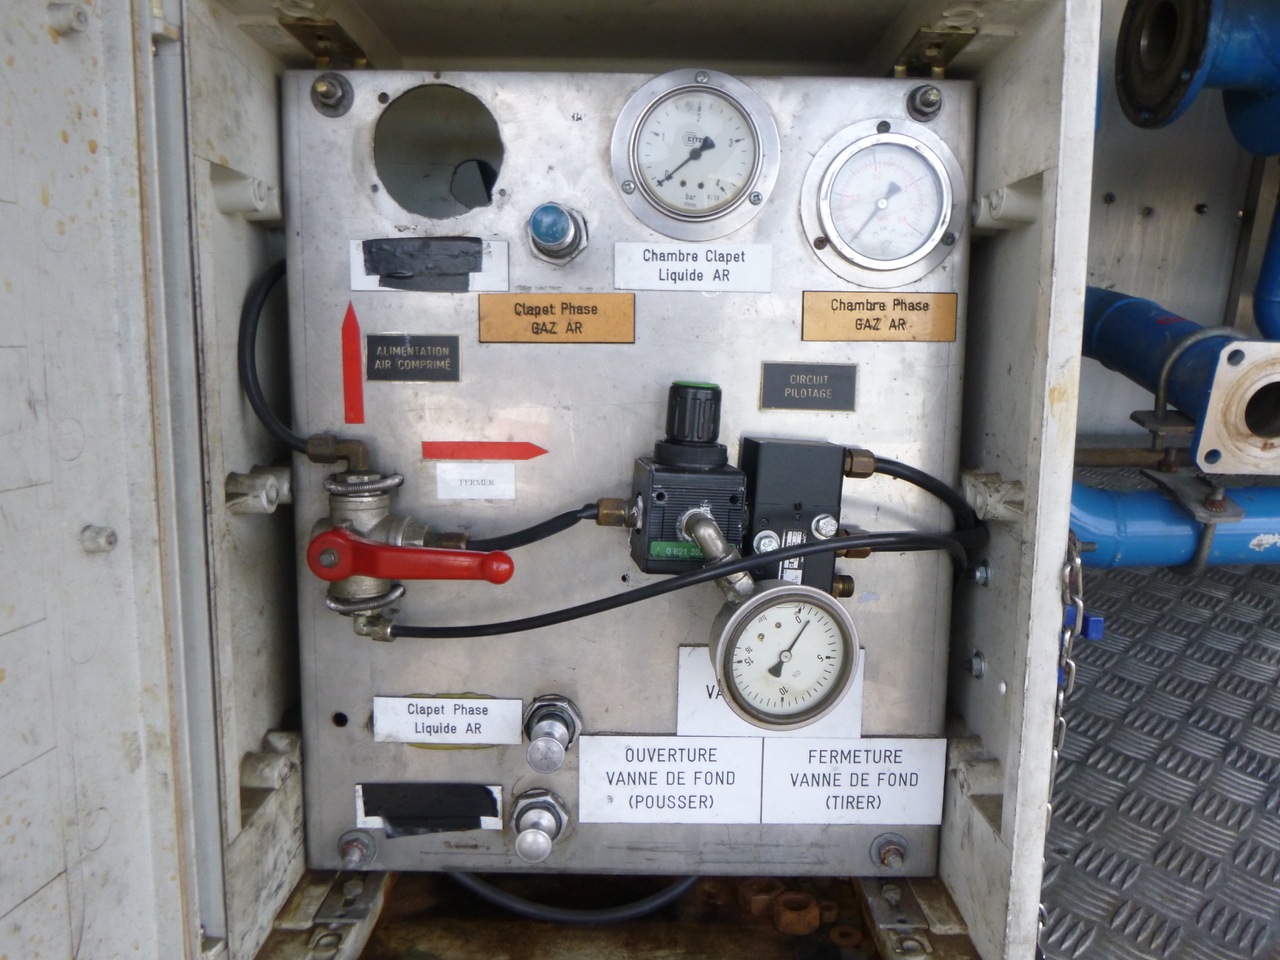 Cisterna semirremolque para transporte de gas Guhur Low-pressure gas tank steel 31.5 m3 / 10 bar (methyl chloride): foto 11